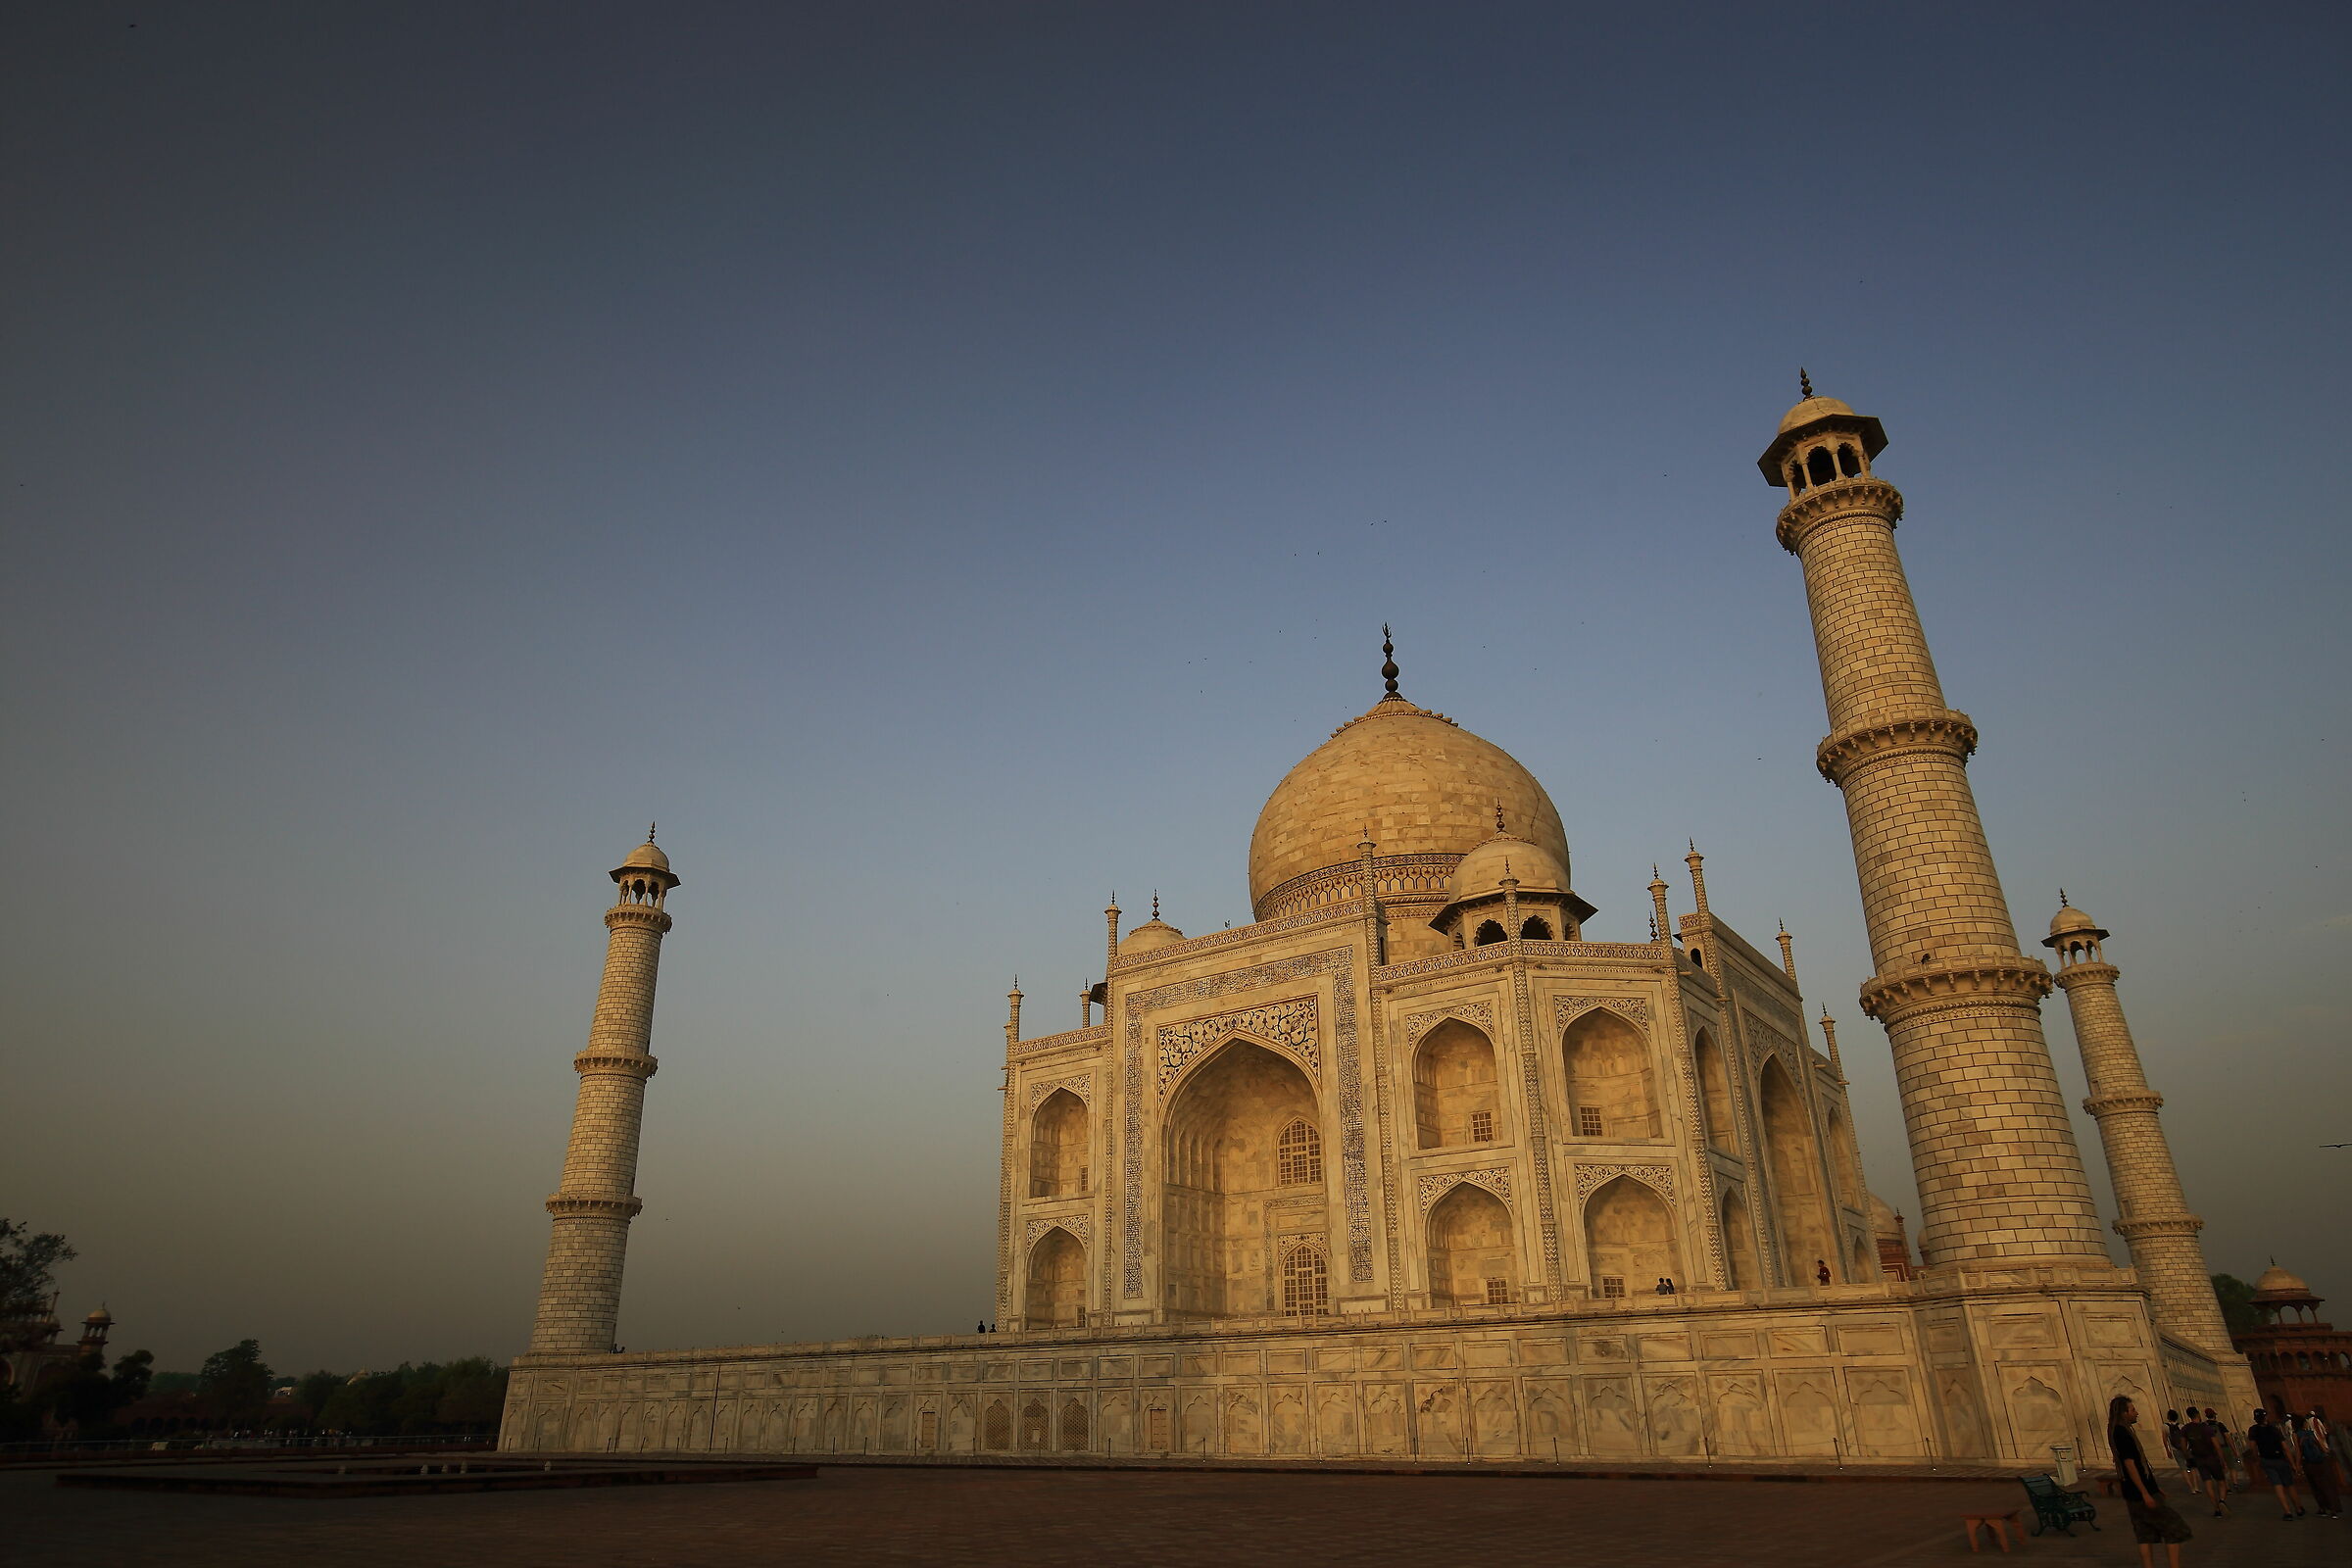 The Taj Mahal at dawn...